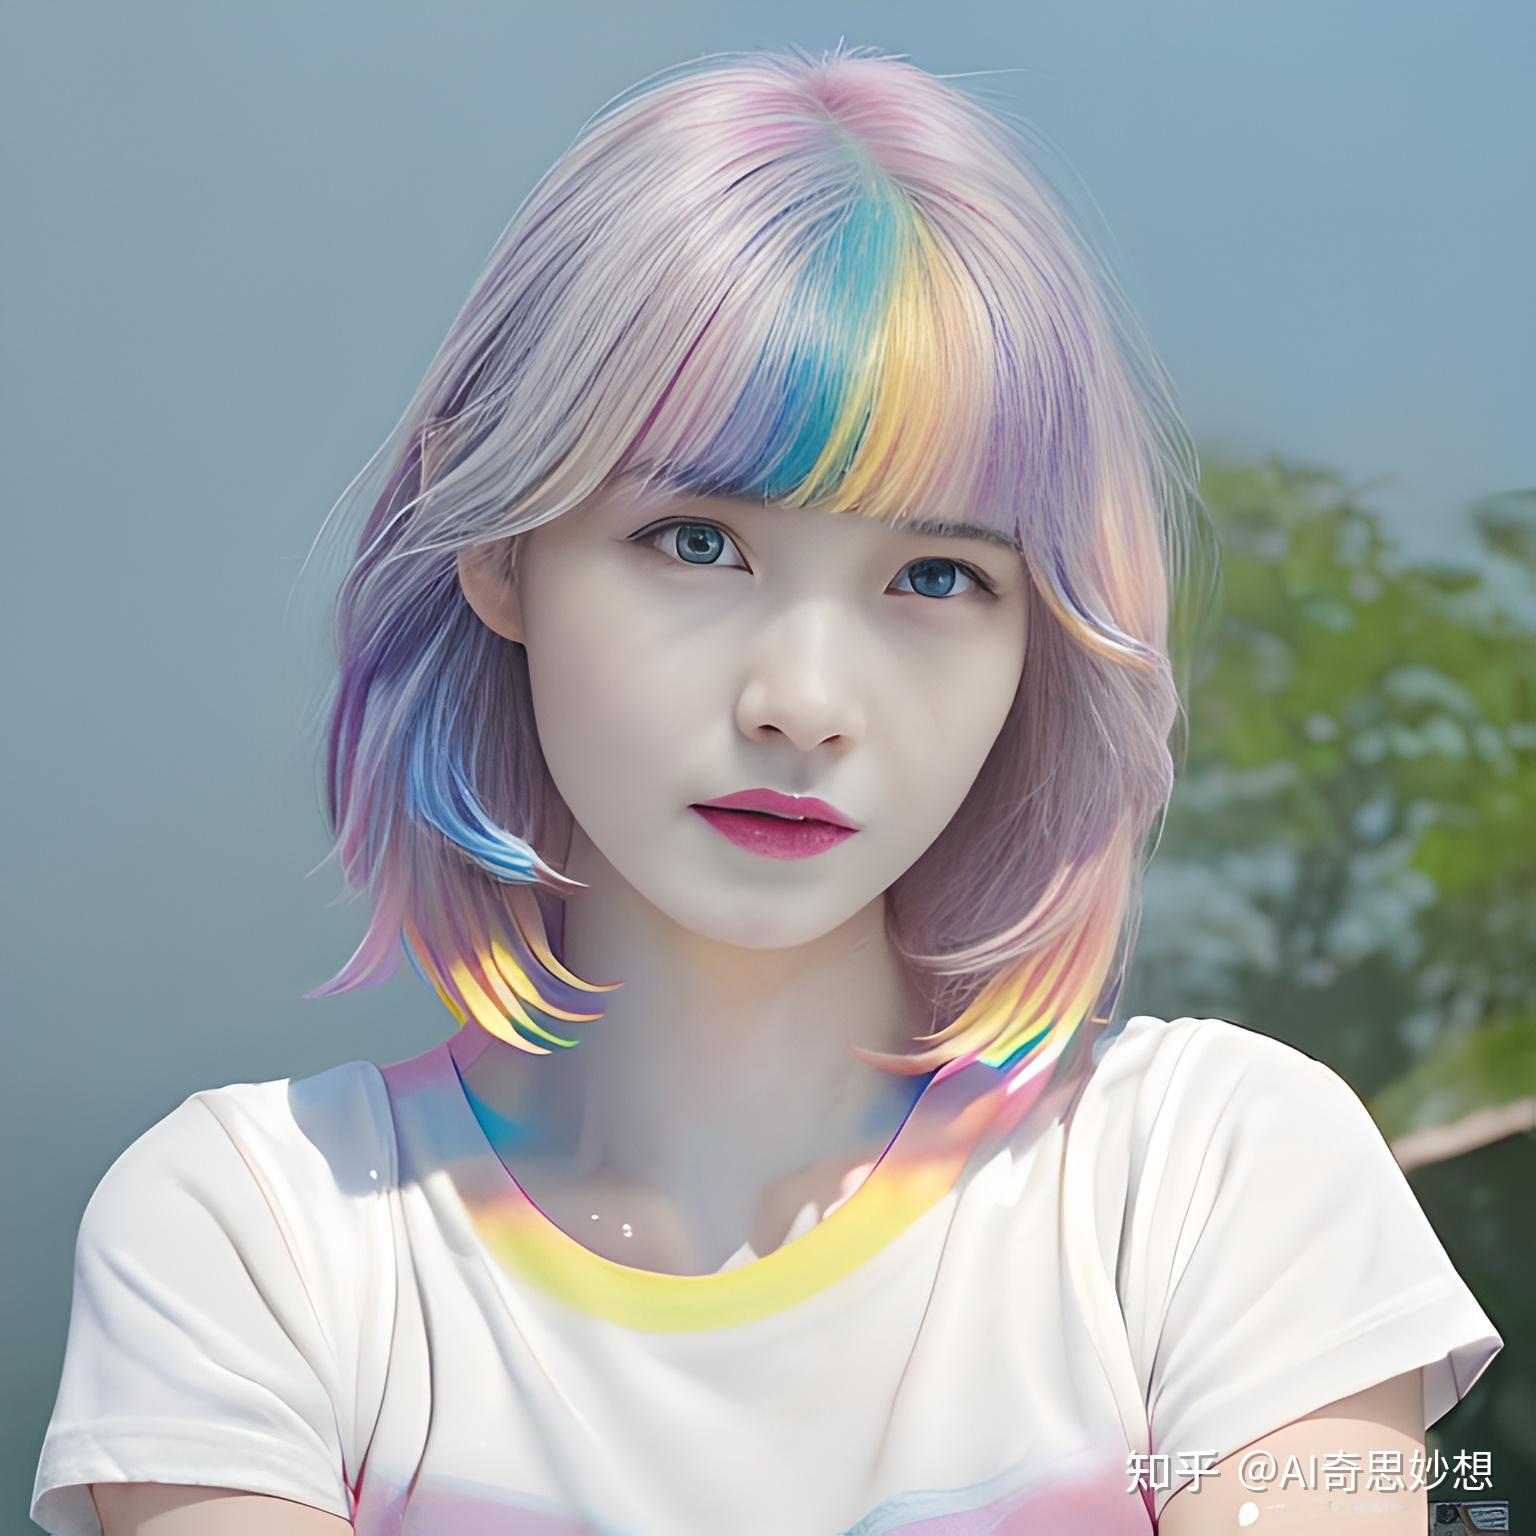 2022網友熱推!【彩虹挑染】流行髮型特輯 | StyleMap 美配